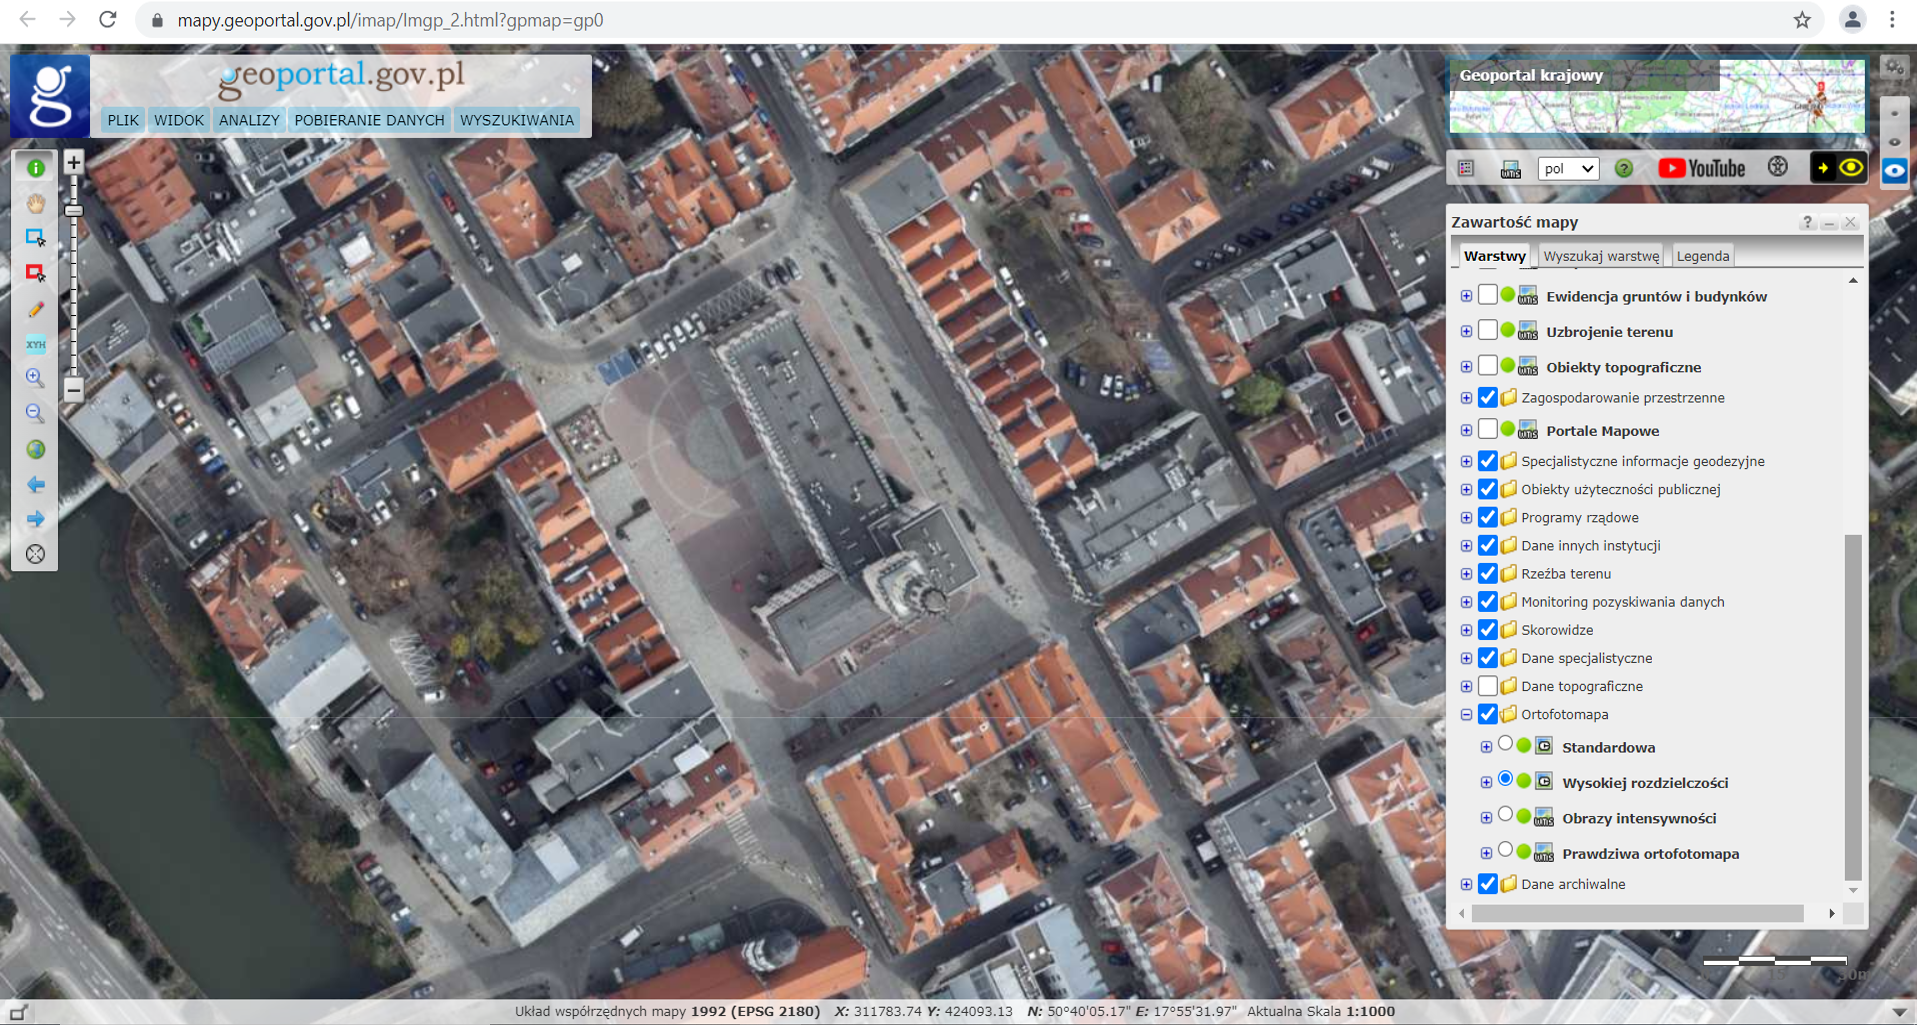 Ilustracja przedstawia zrzut ekranu z serwisu www.geoportal.gov.pl przedstawiający miasto Opole w usłudze Ortofotomapa Wysokiej Rozdzielczości